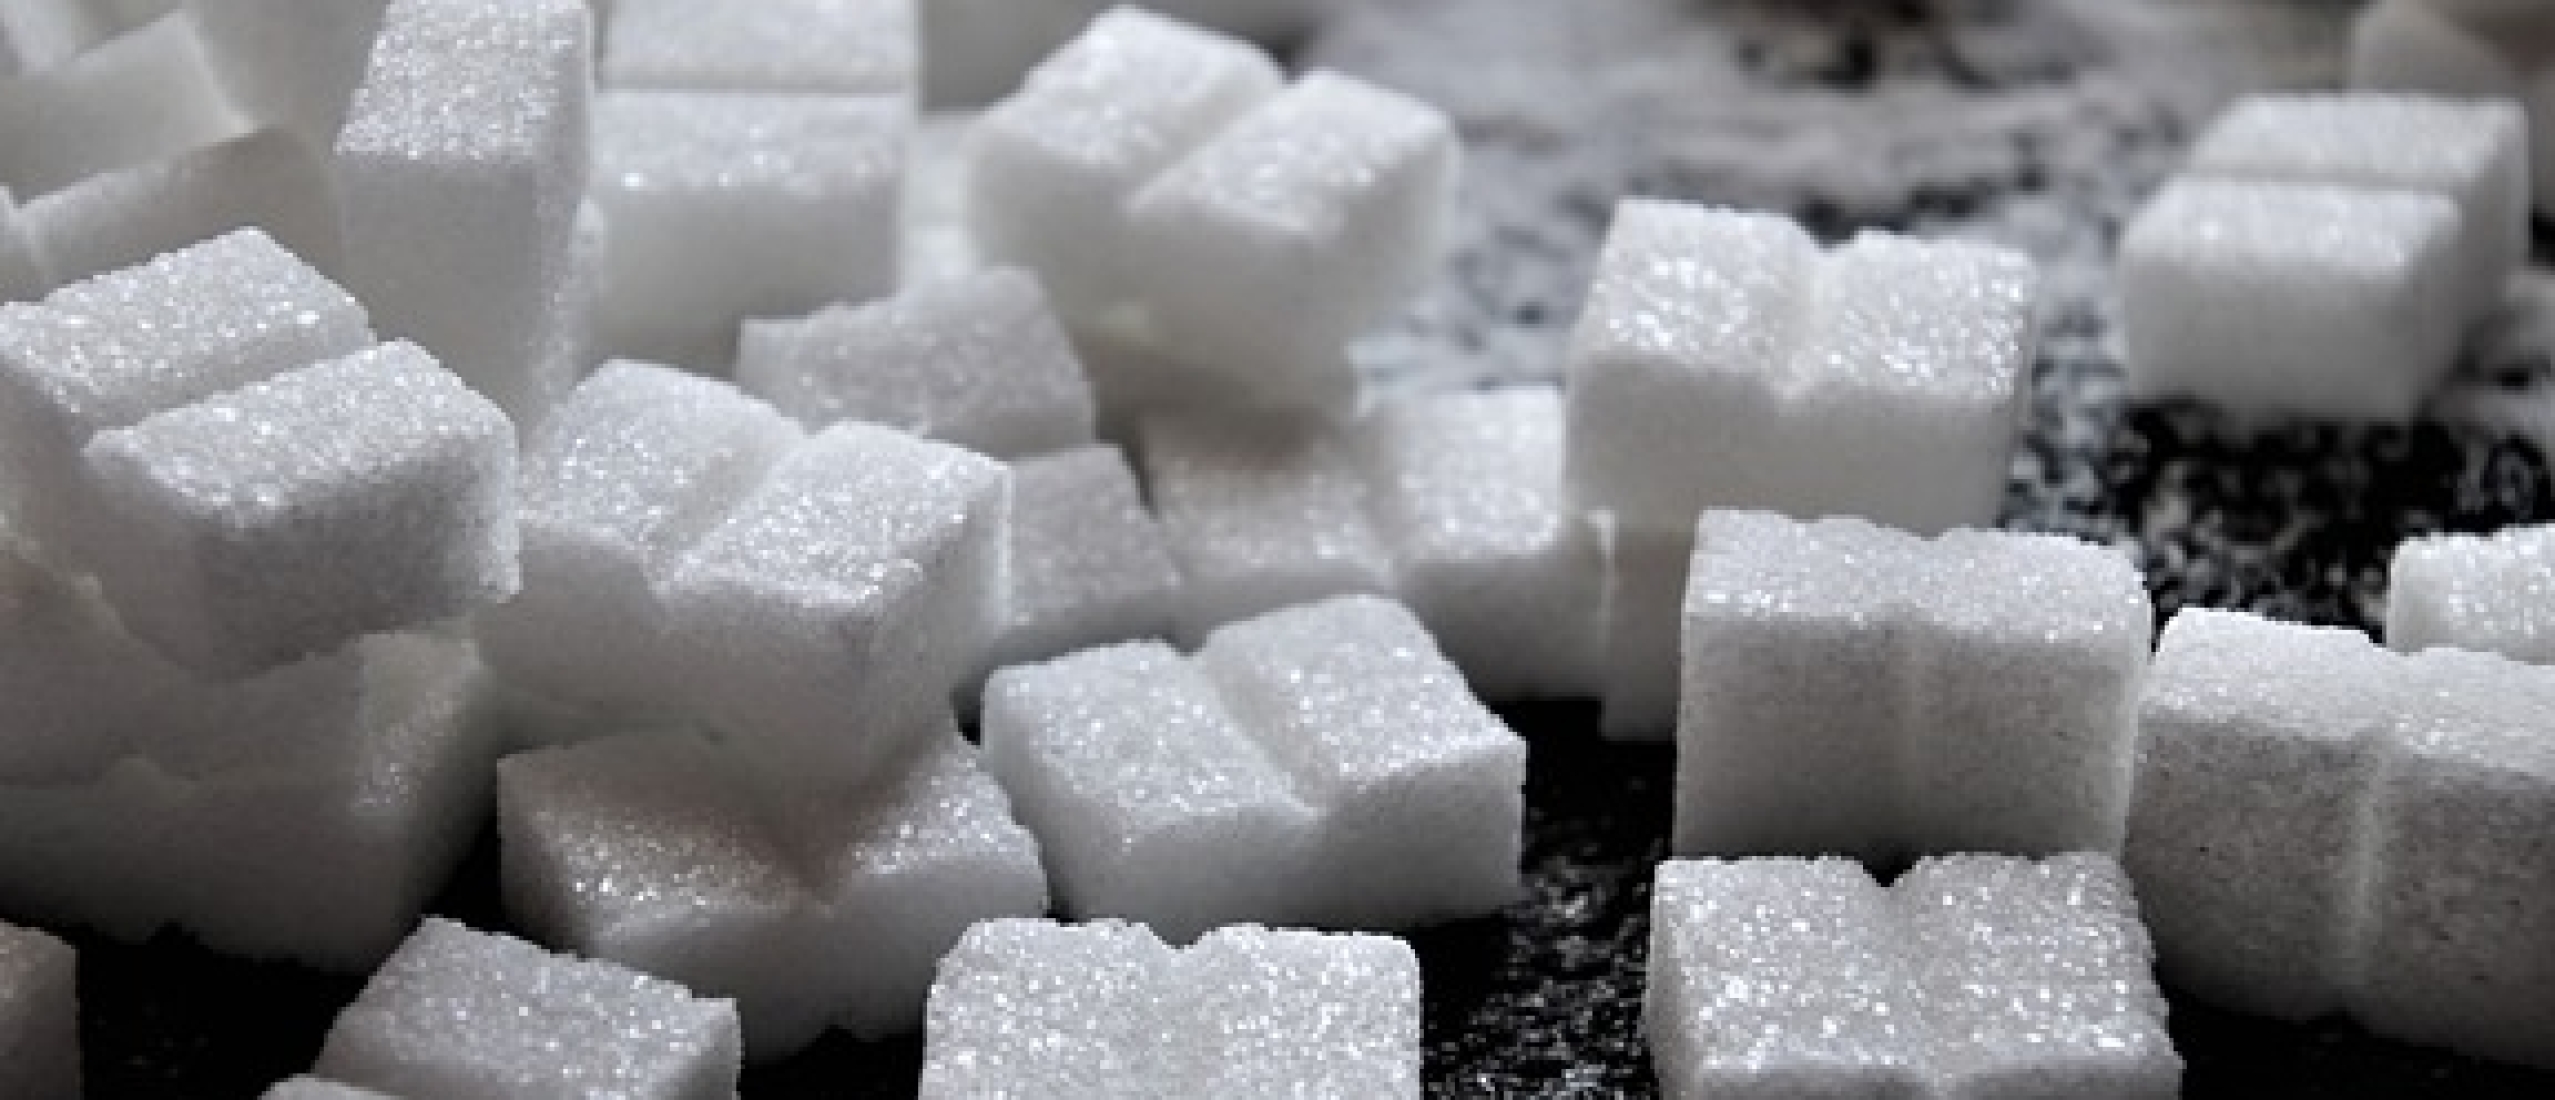 Hoeveel suiker kan je per dag nemen